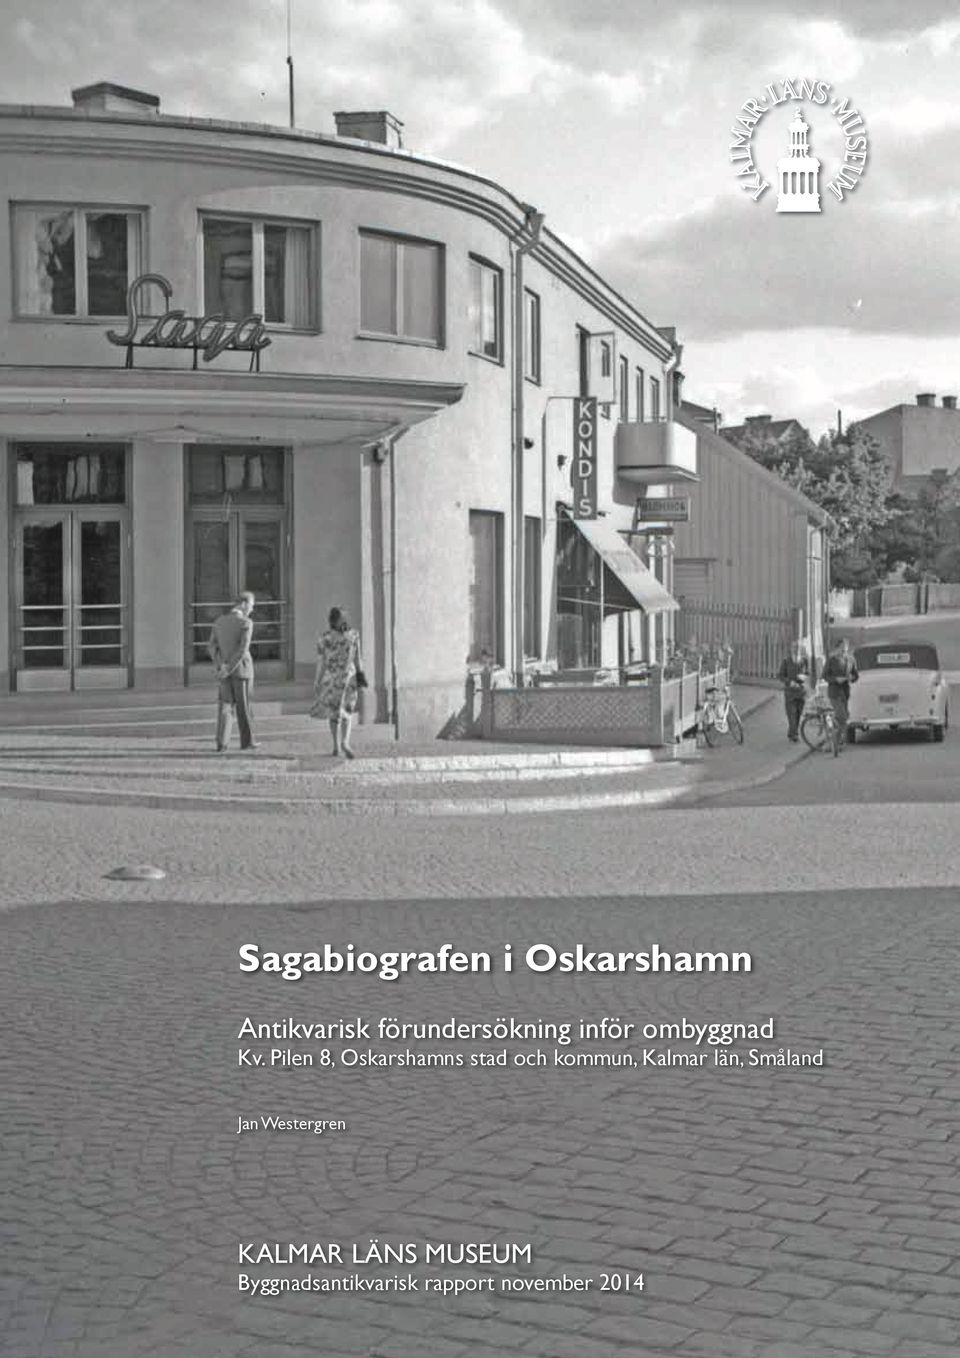 Pilen 8, Oskarshamns stad och kommun, Kalmar län,